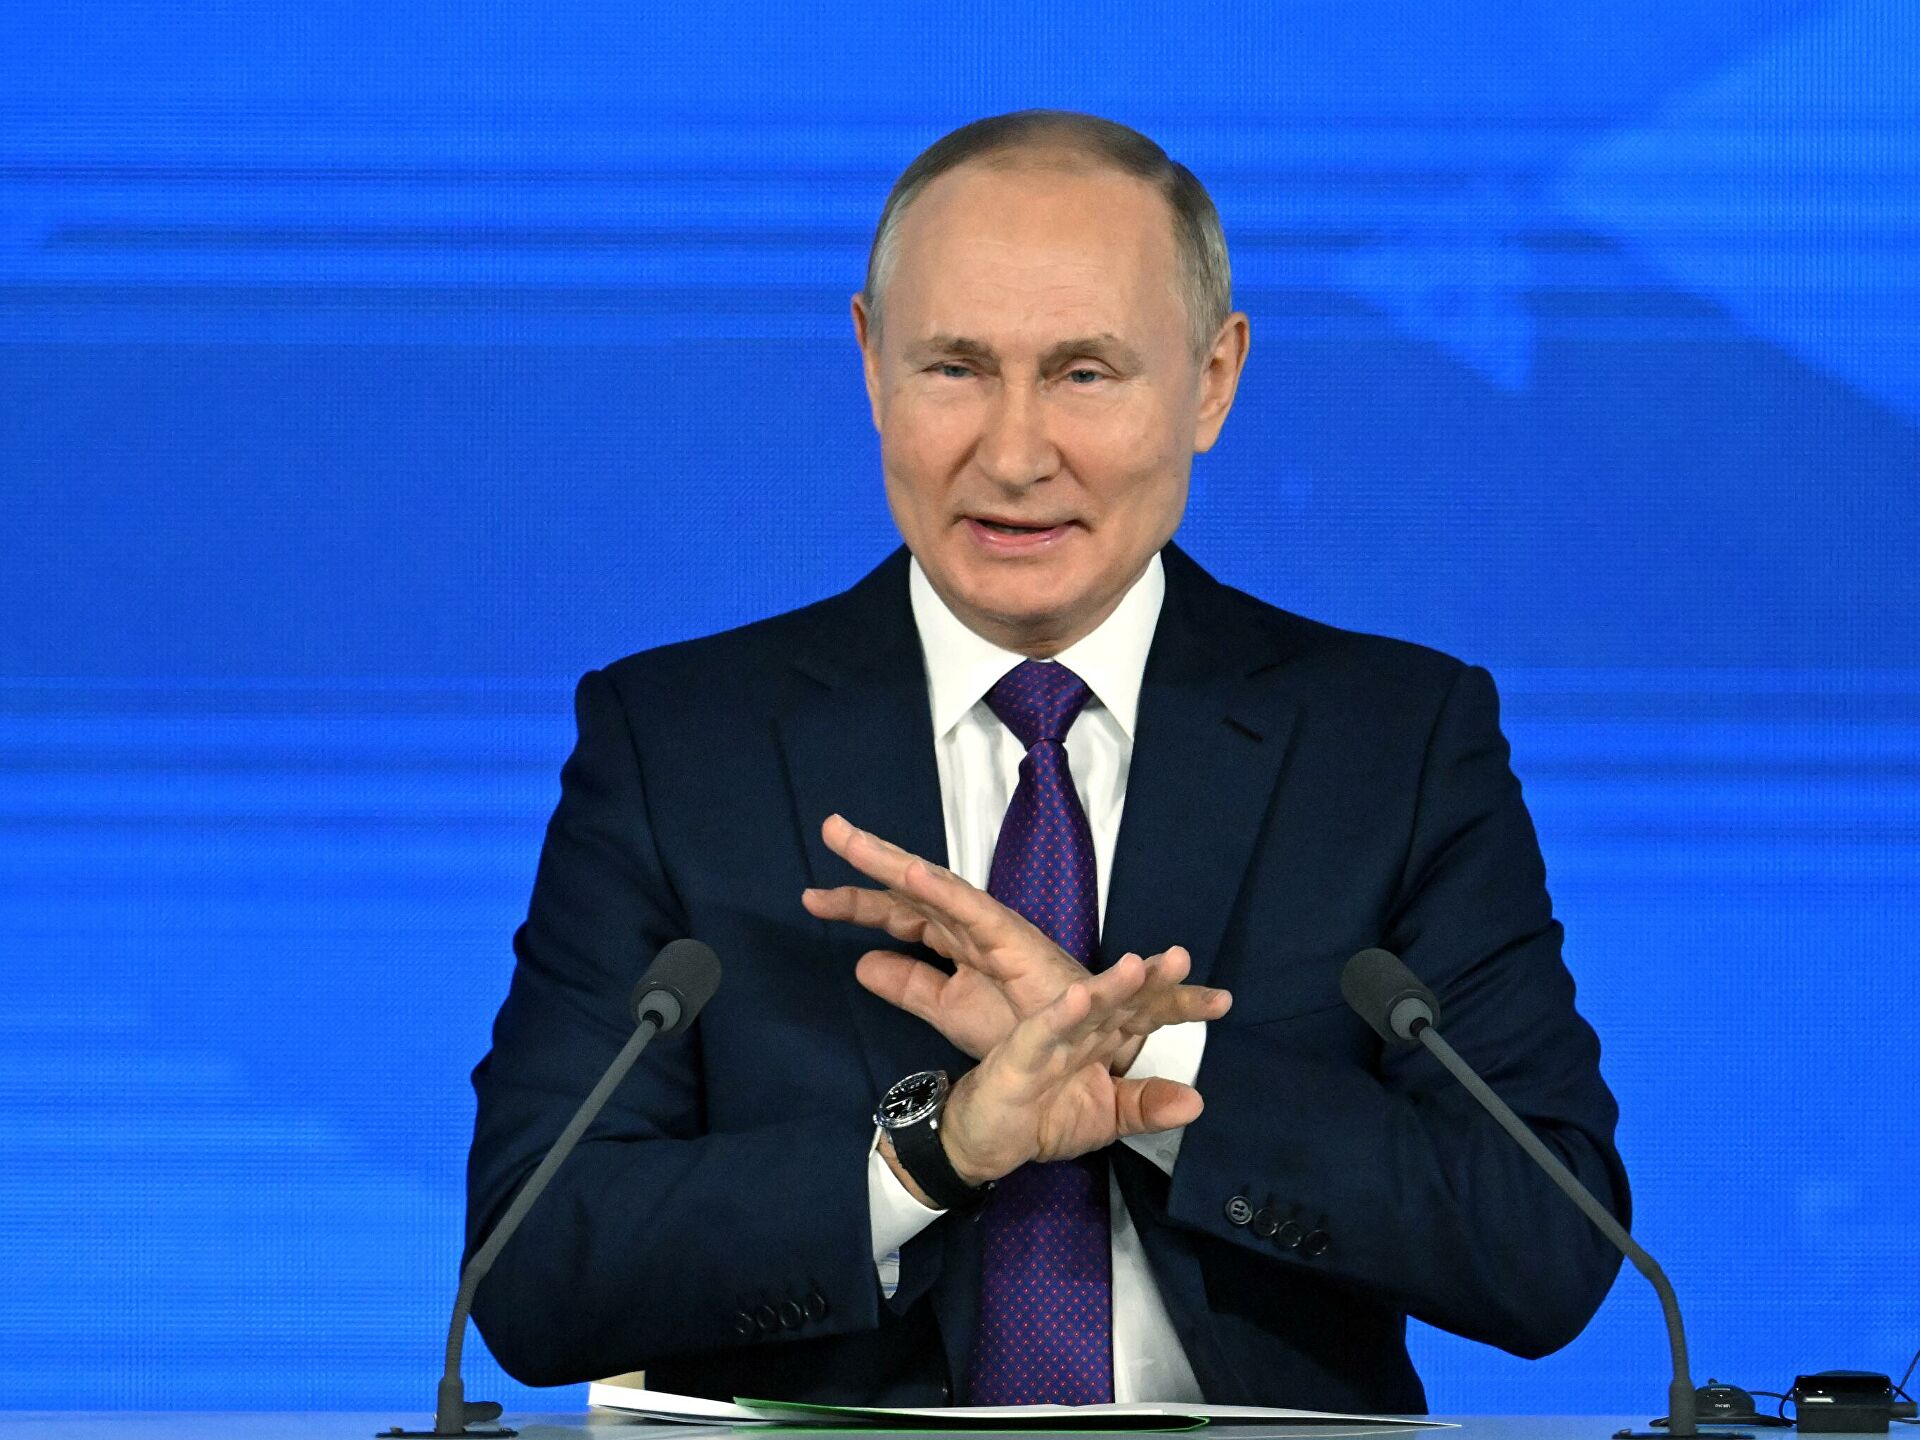 قدرات الرئيس الروسي فلاديمير بوتين العقلية watanserb.com